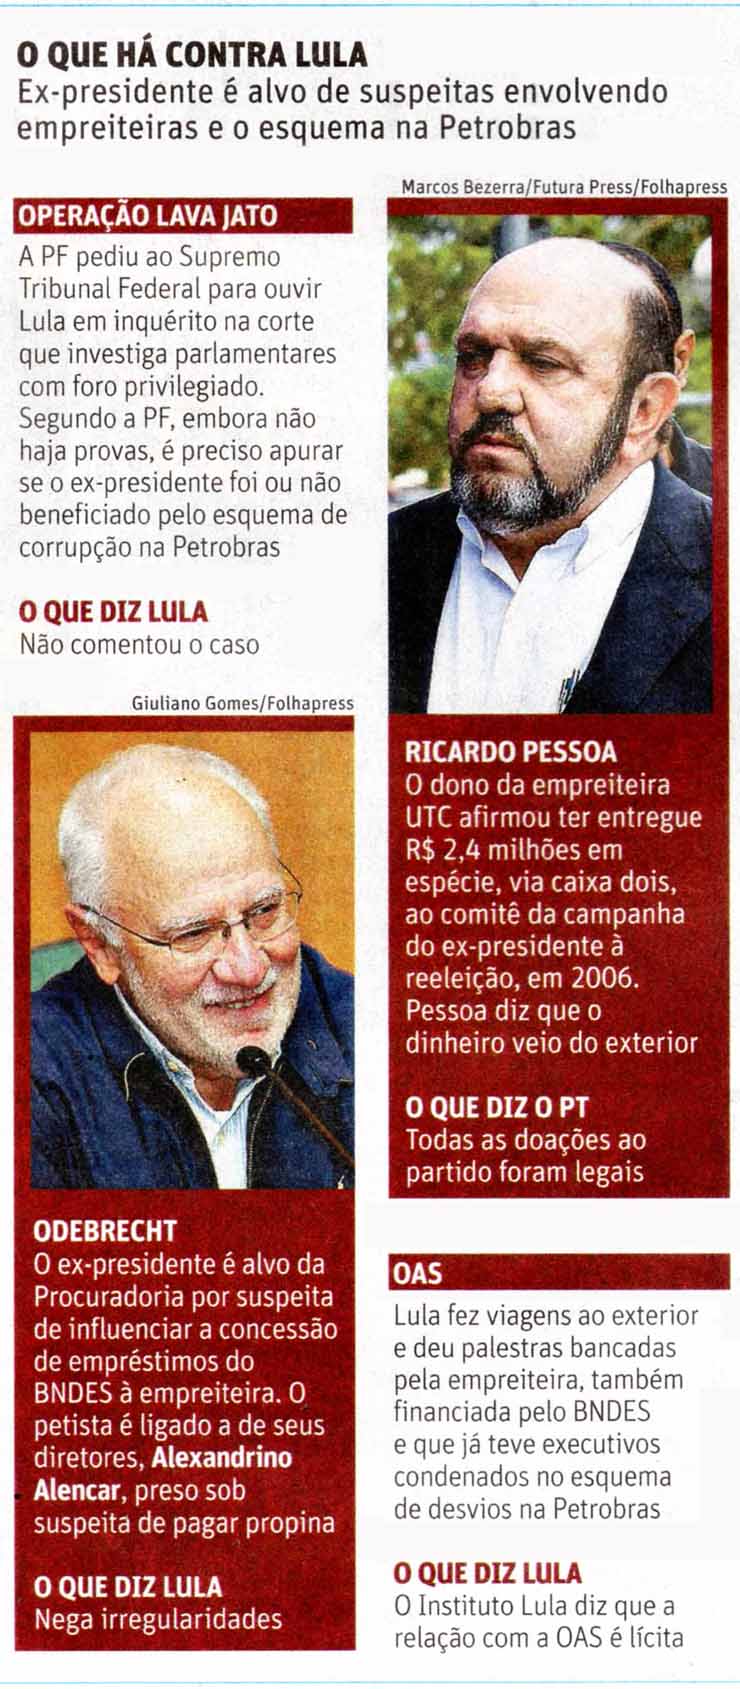 Folha de So Paulo - 12/09/15 - Lula na Lava Jato